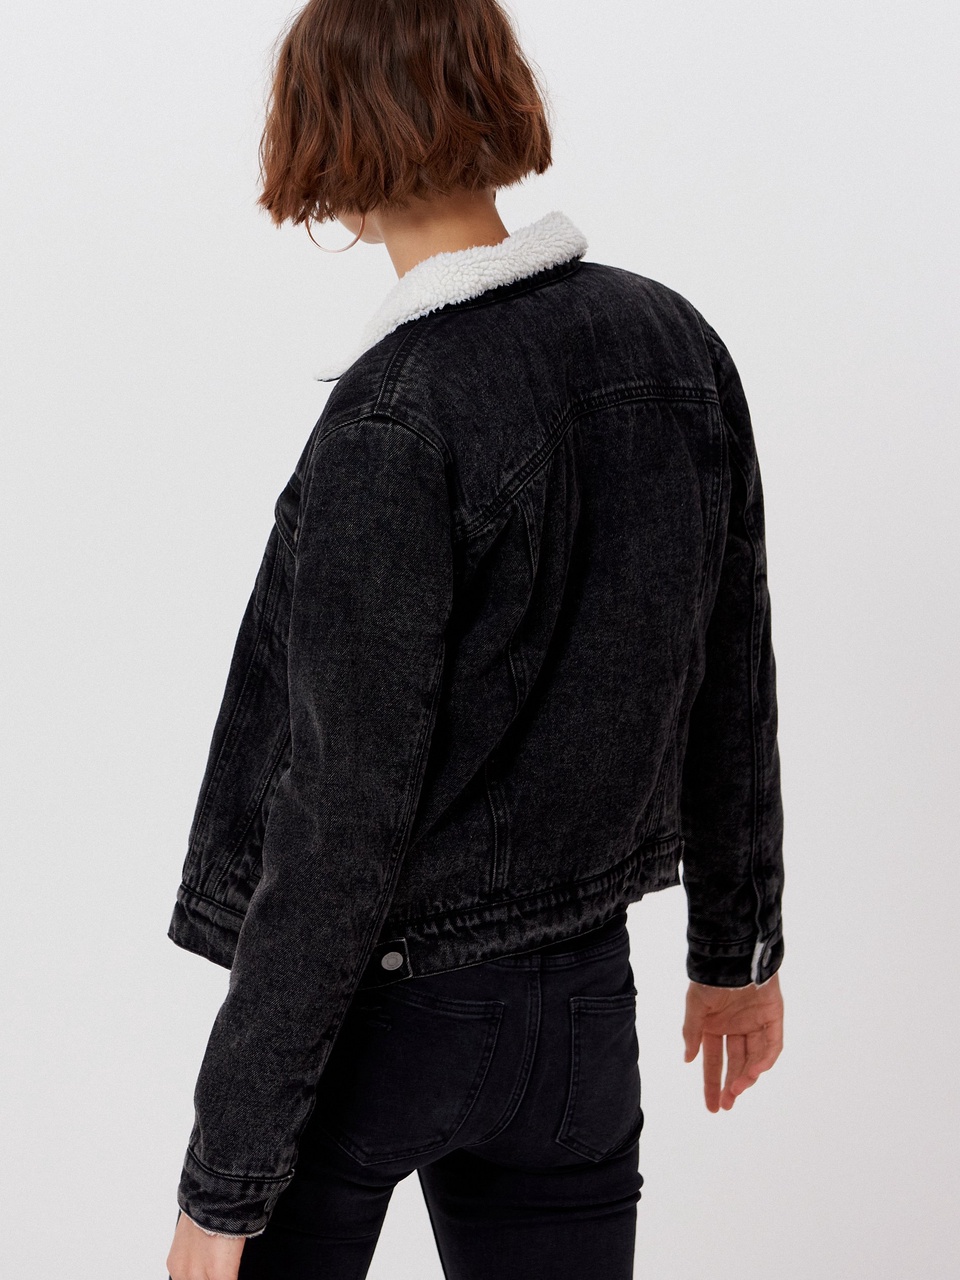 Ladies` jacket - 2 999 ₽, заказать онлайн.